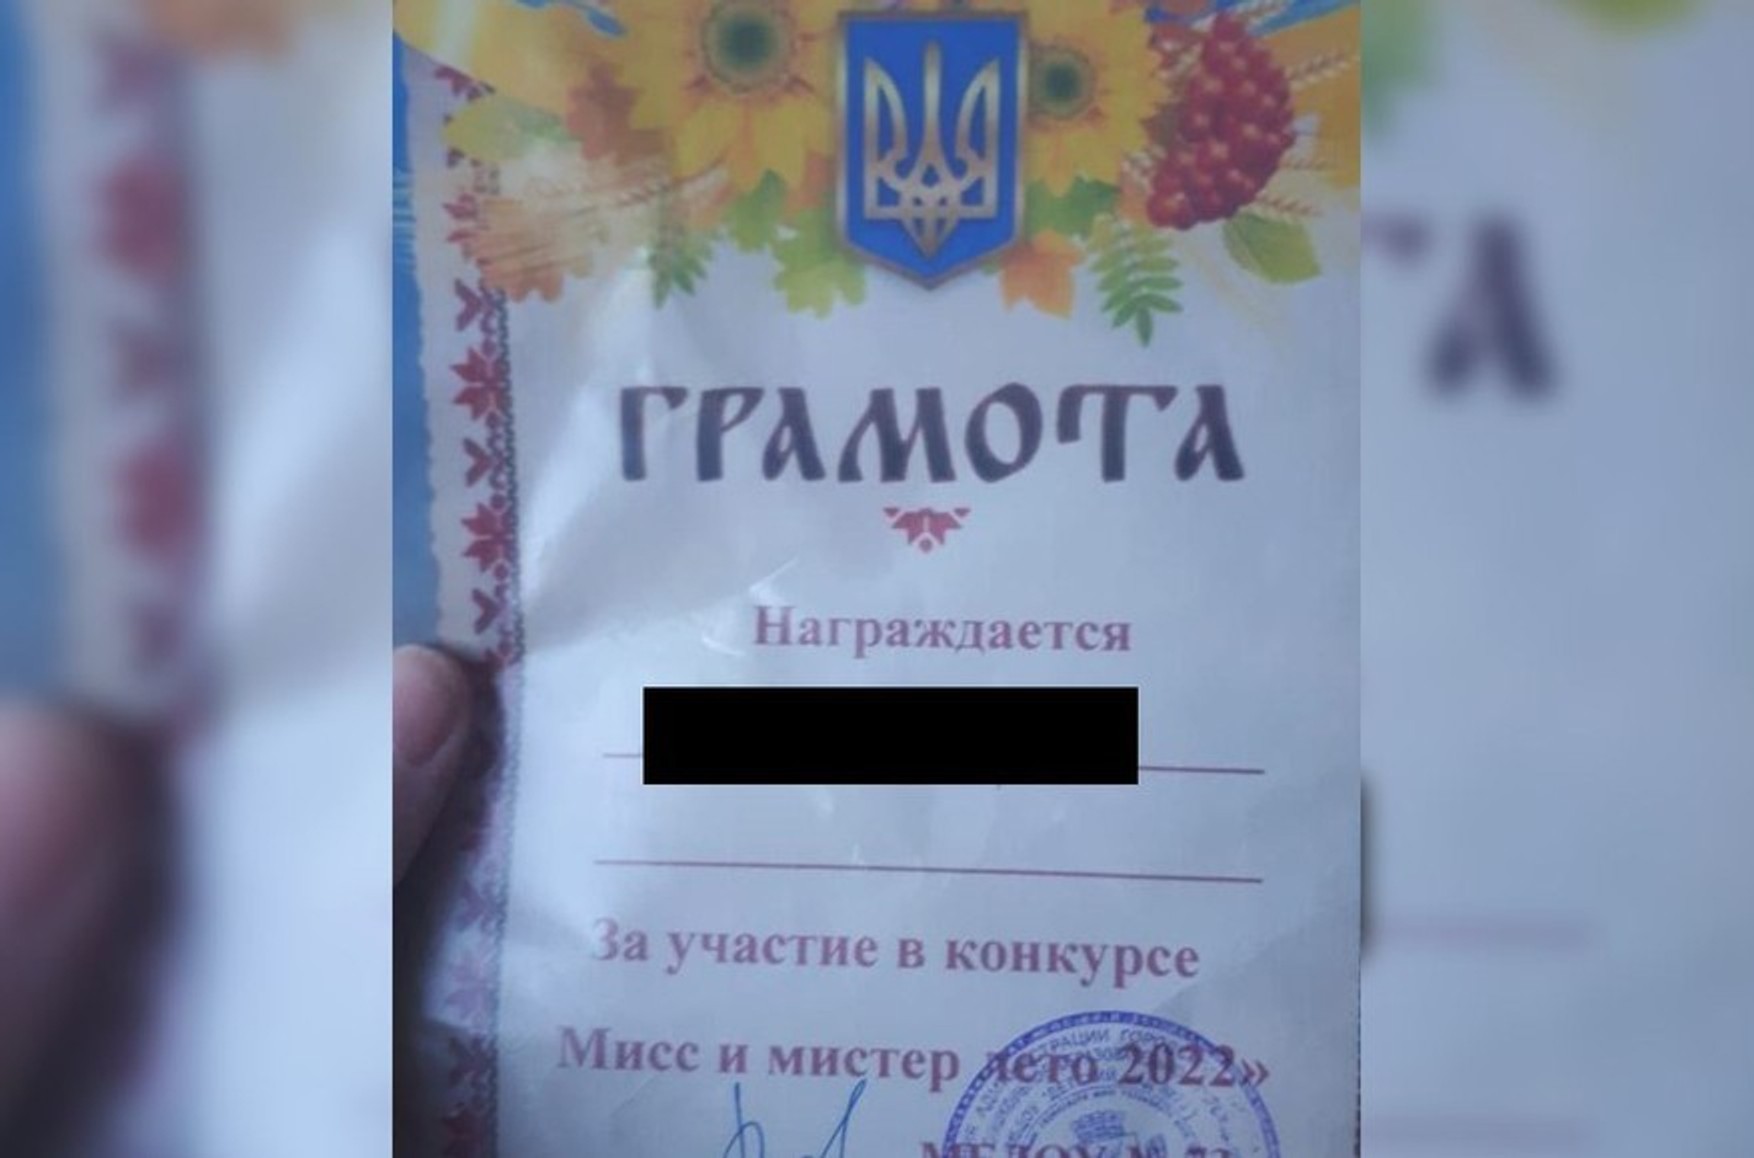 В Чите уволили воспитателя и руководителя детского сада, в котором детям выдали грамоты с гербом Украины